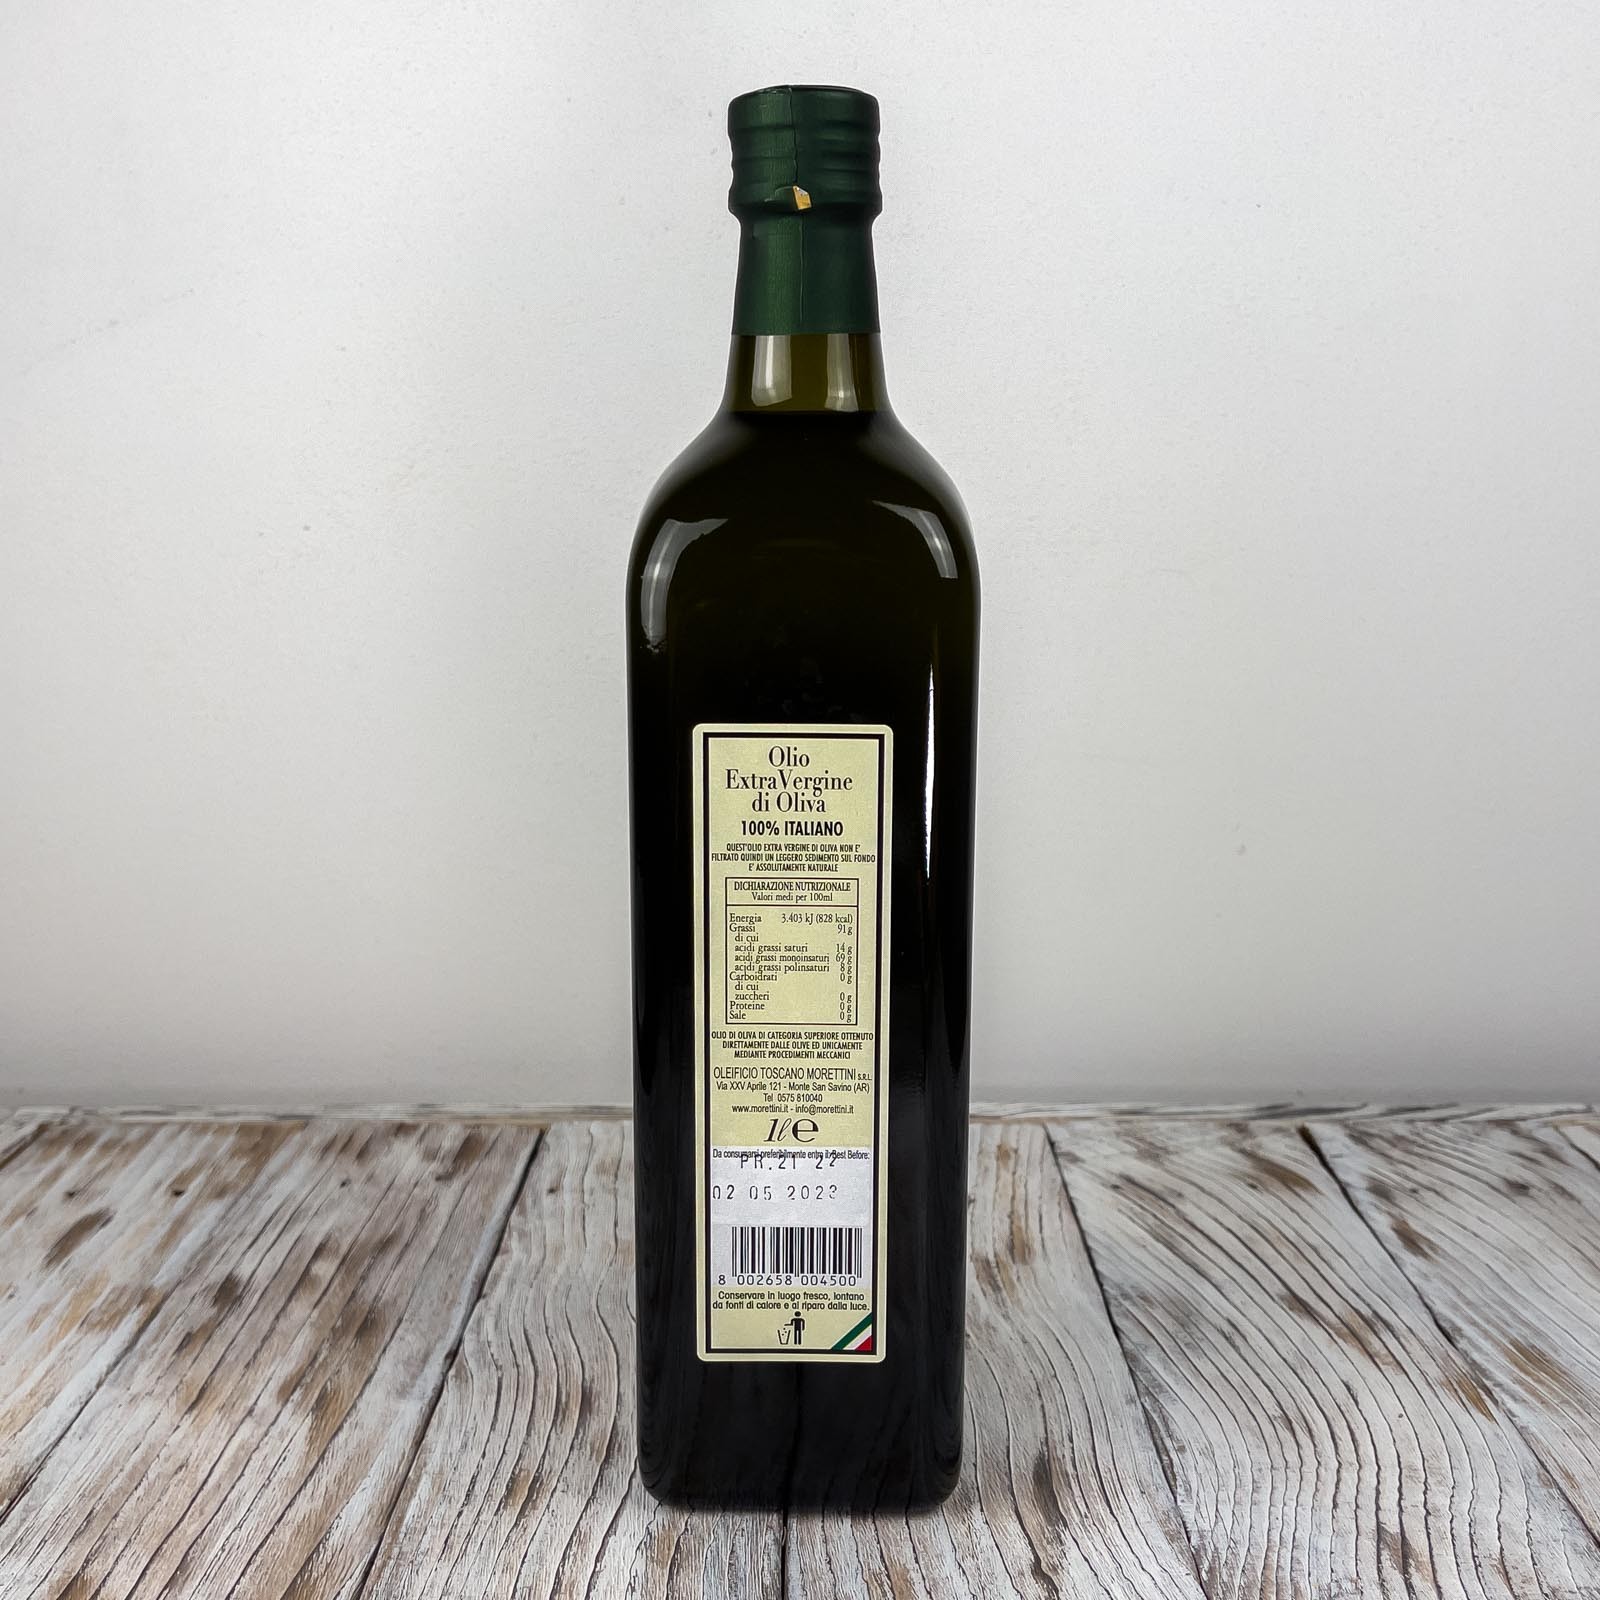 „Il Campo 100% Italiano”, natives Olivenöl extra, hergestellt mit der Methode der Kaltverarbeitung von in Italien geernteten und gepressten Oliven - Produktionsjahr 2021/2022.